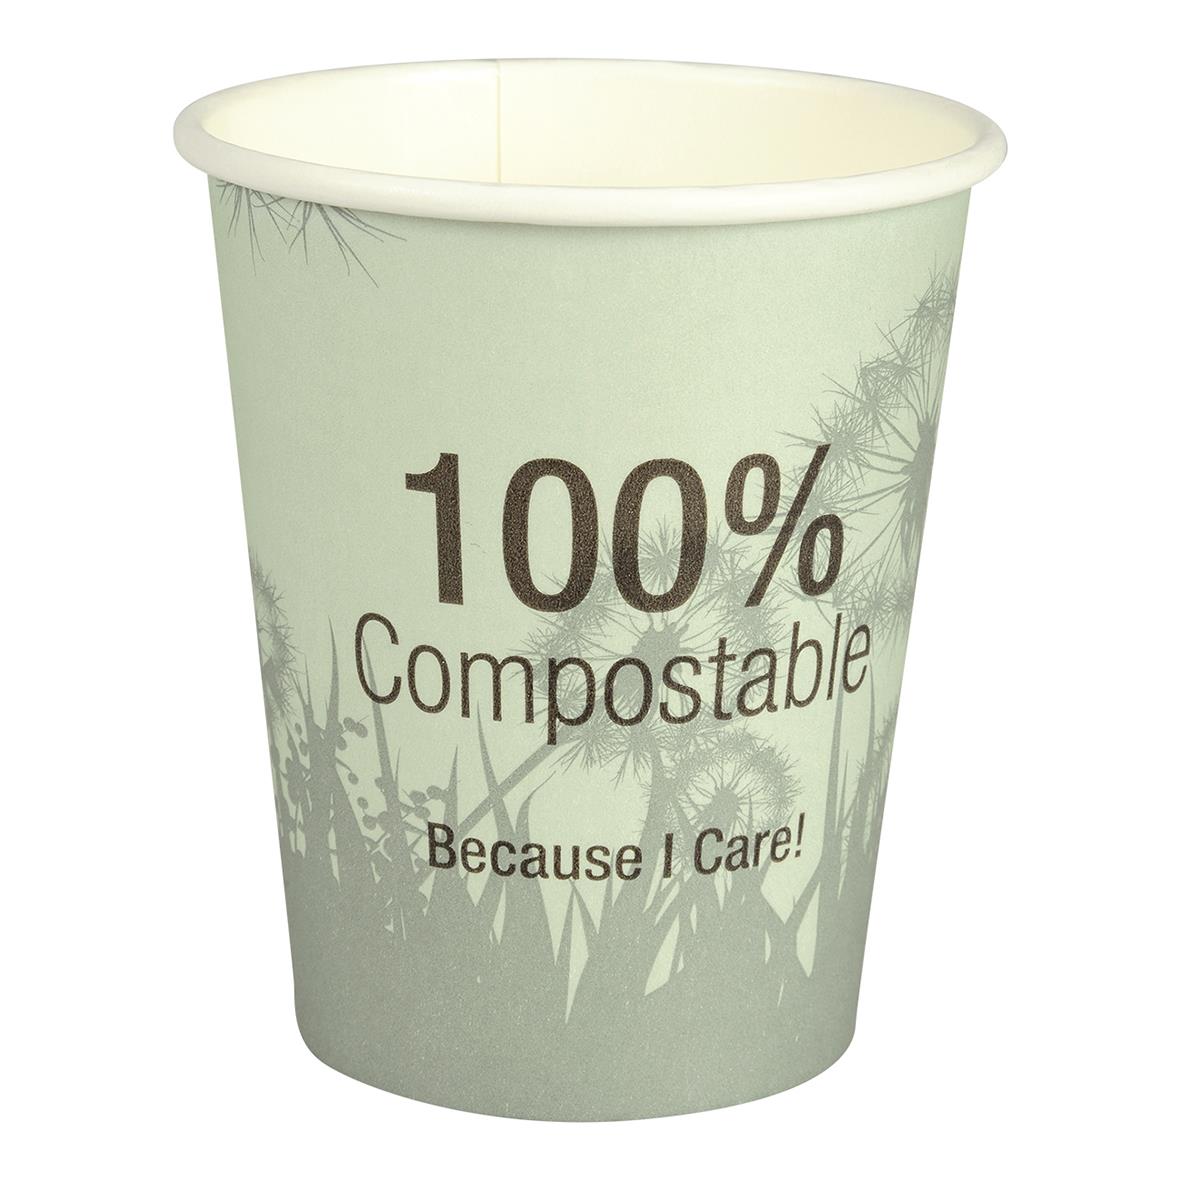 Pappersmugg 100% komposterbar Grön 24cl 61020266